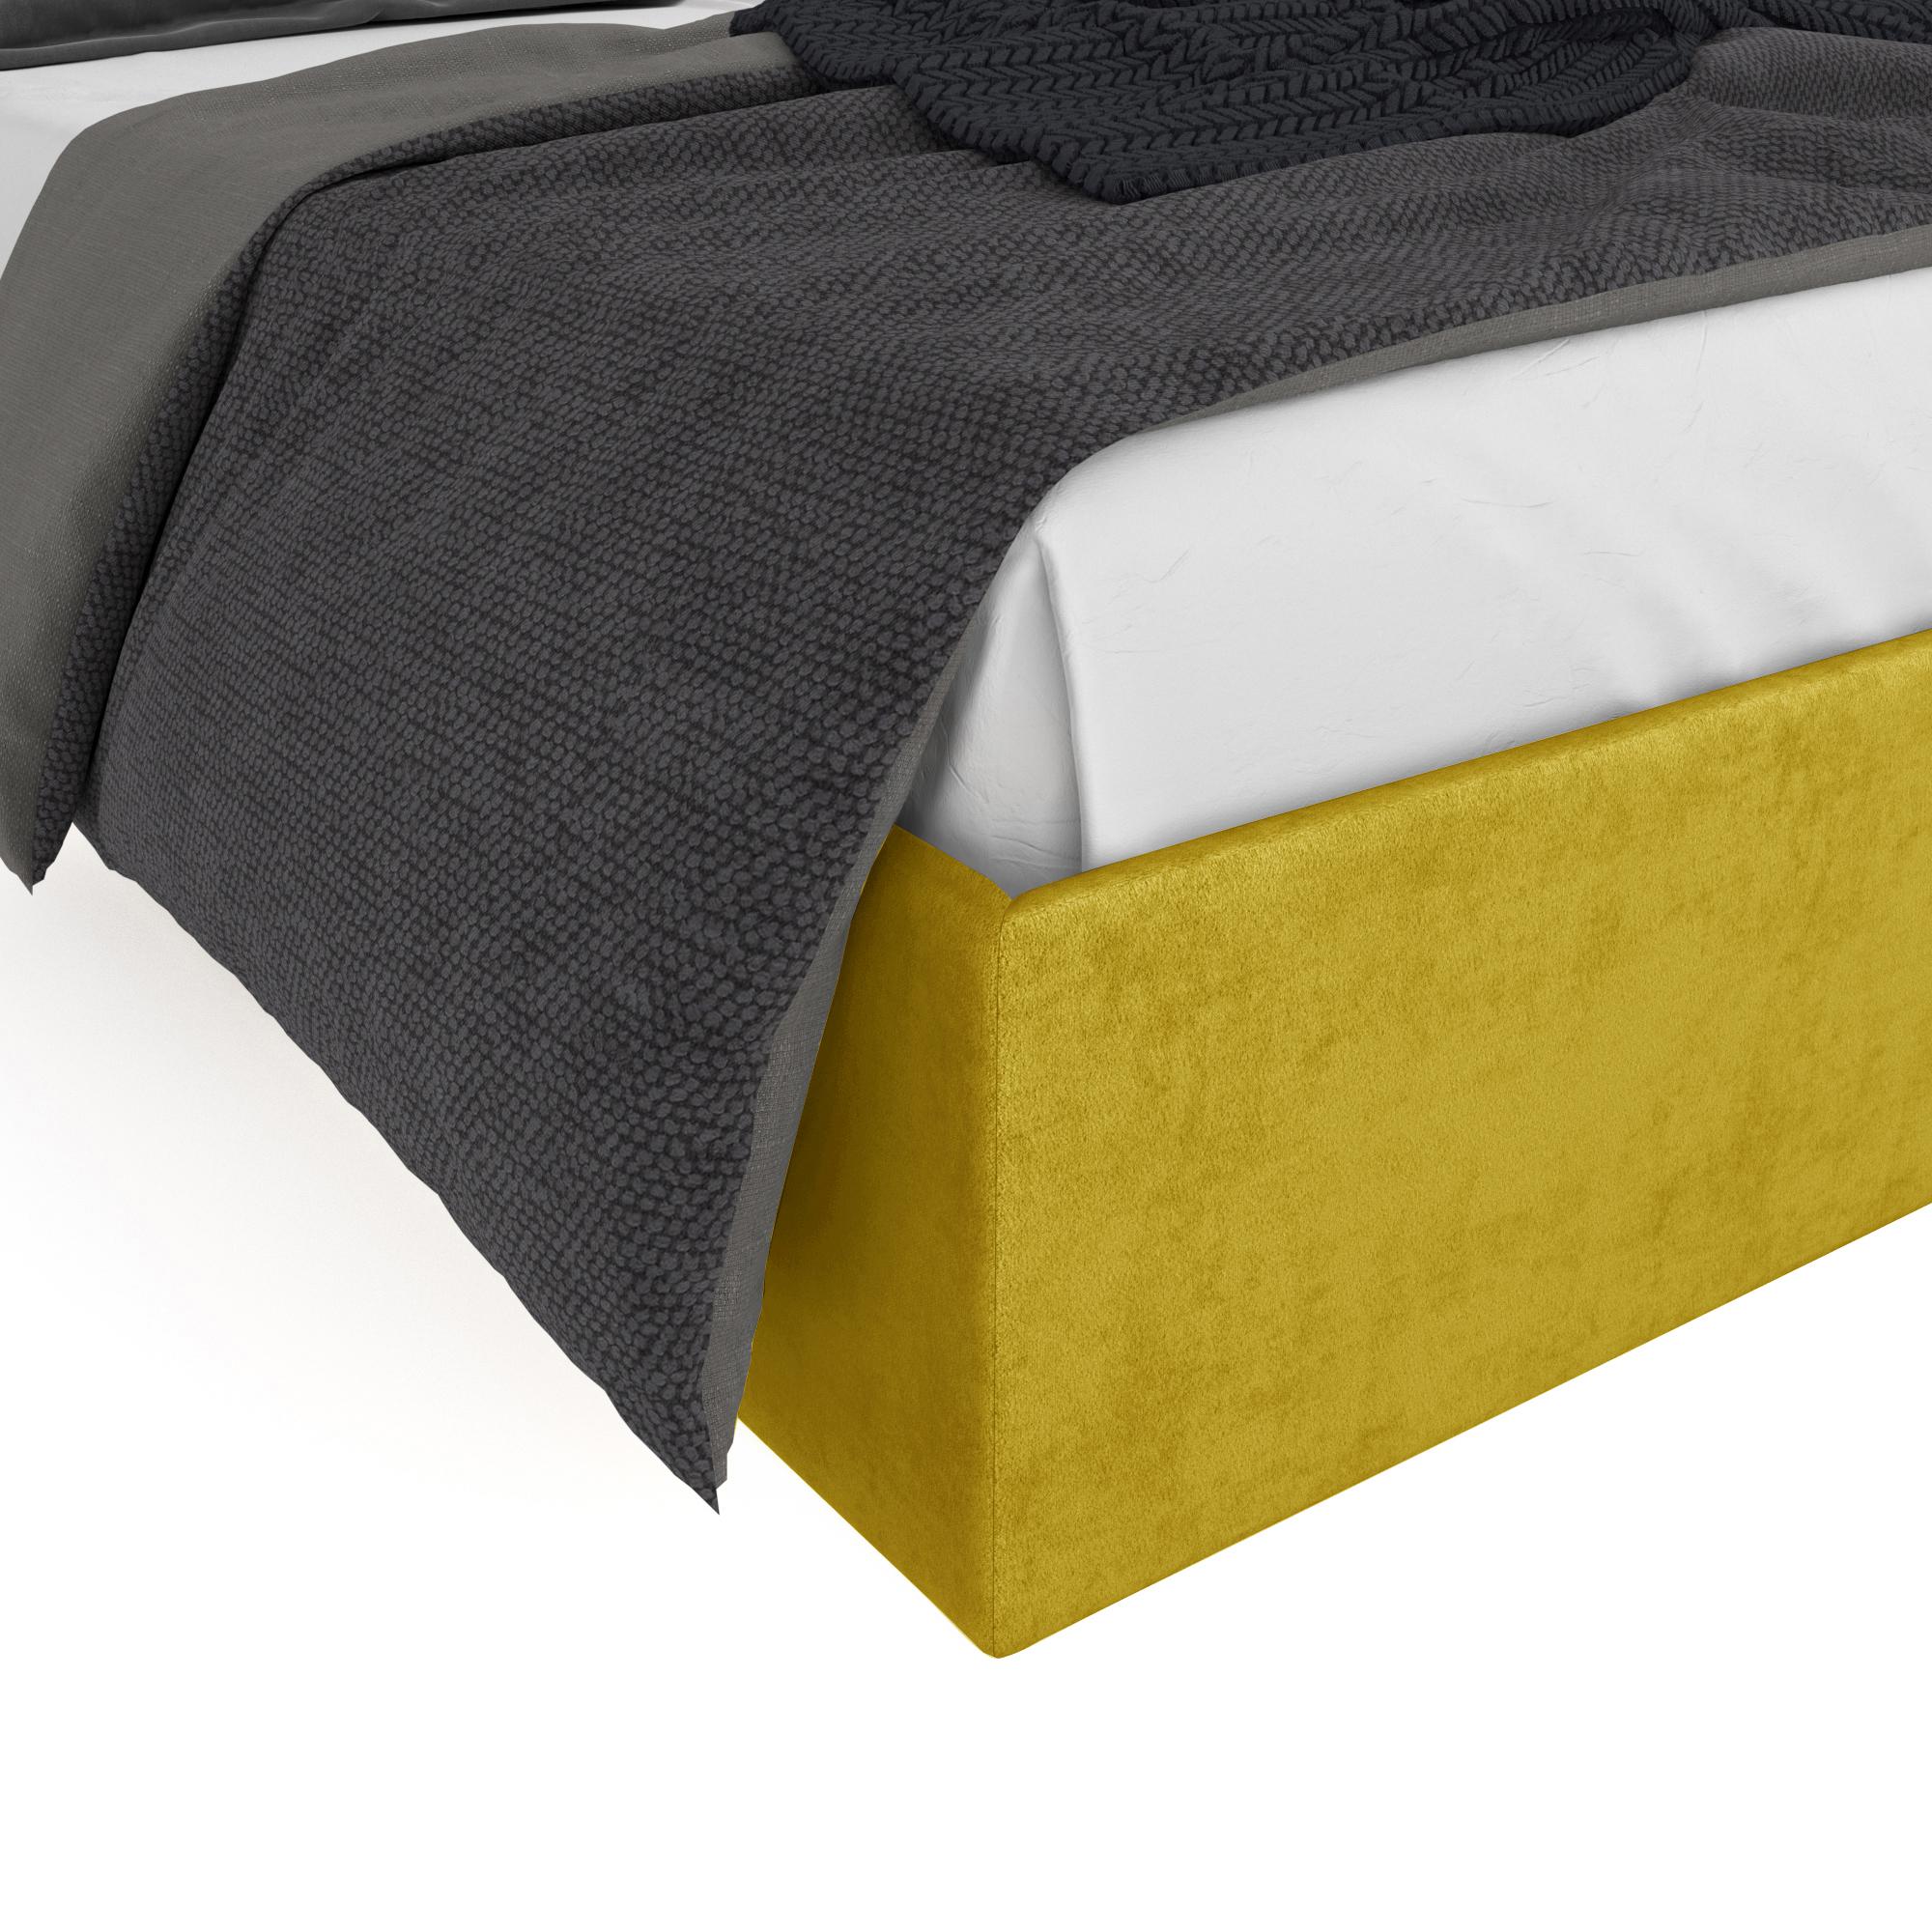 Кровать Навис желтая 160х200 изображение товара